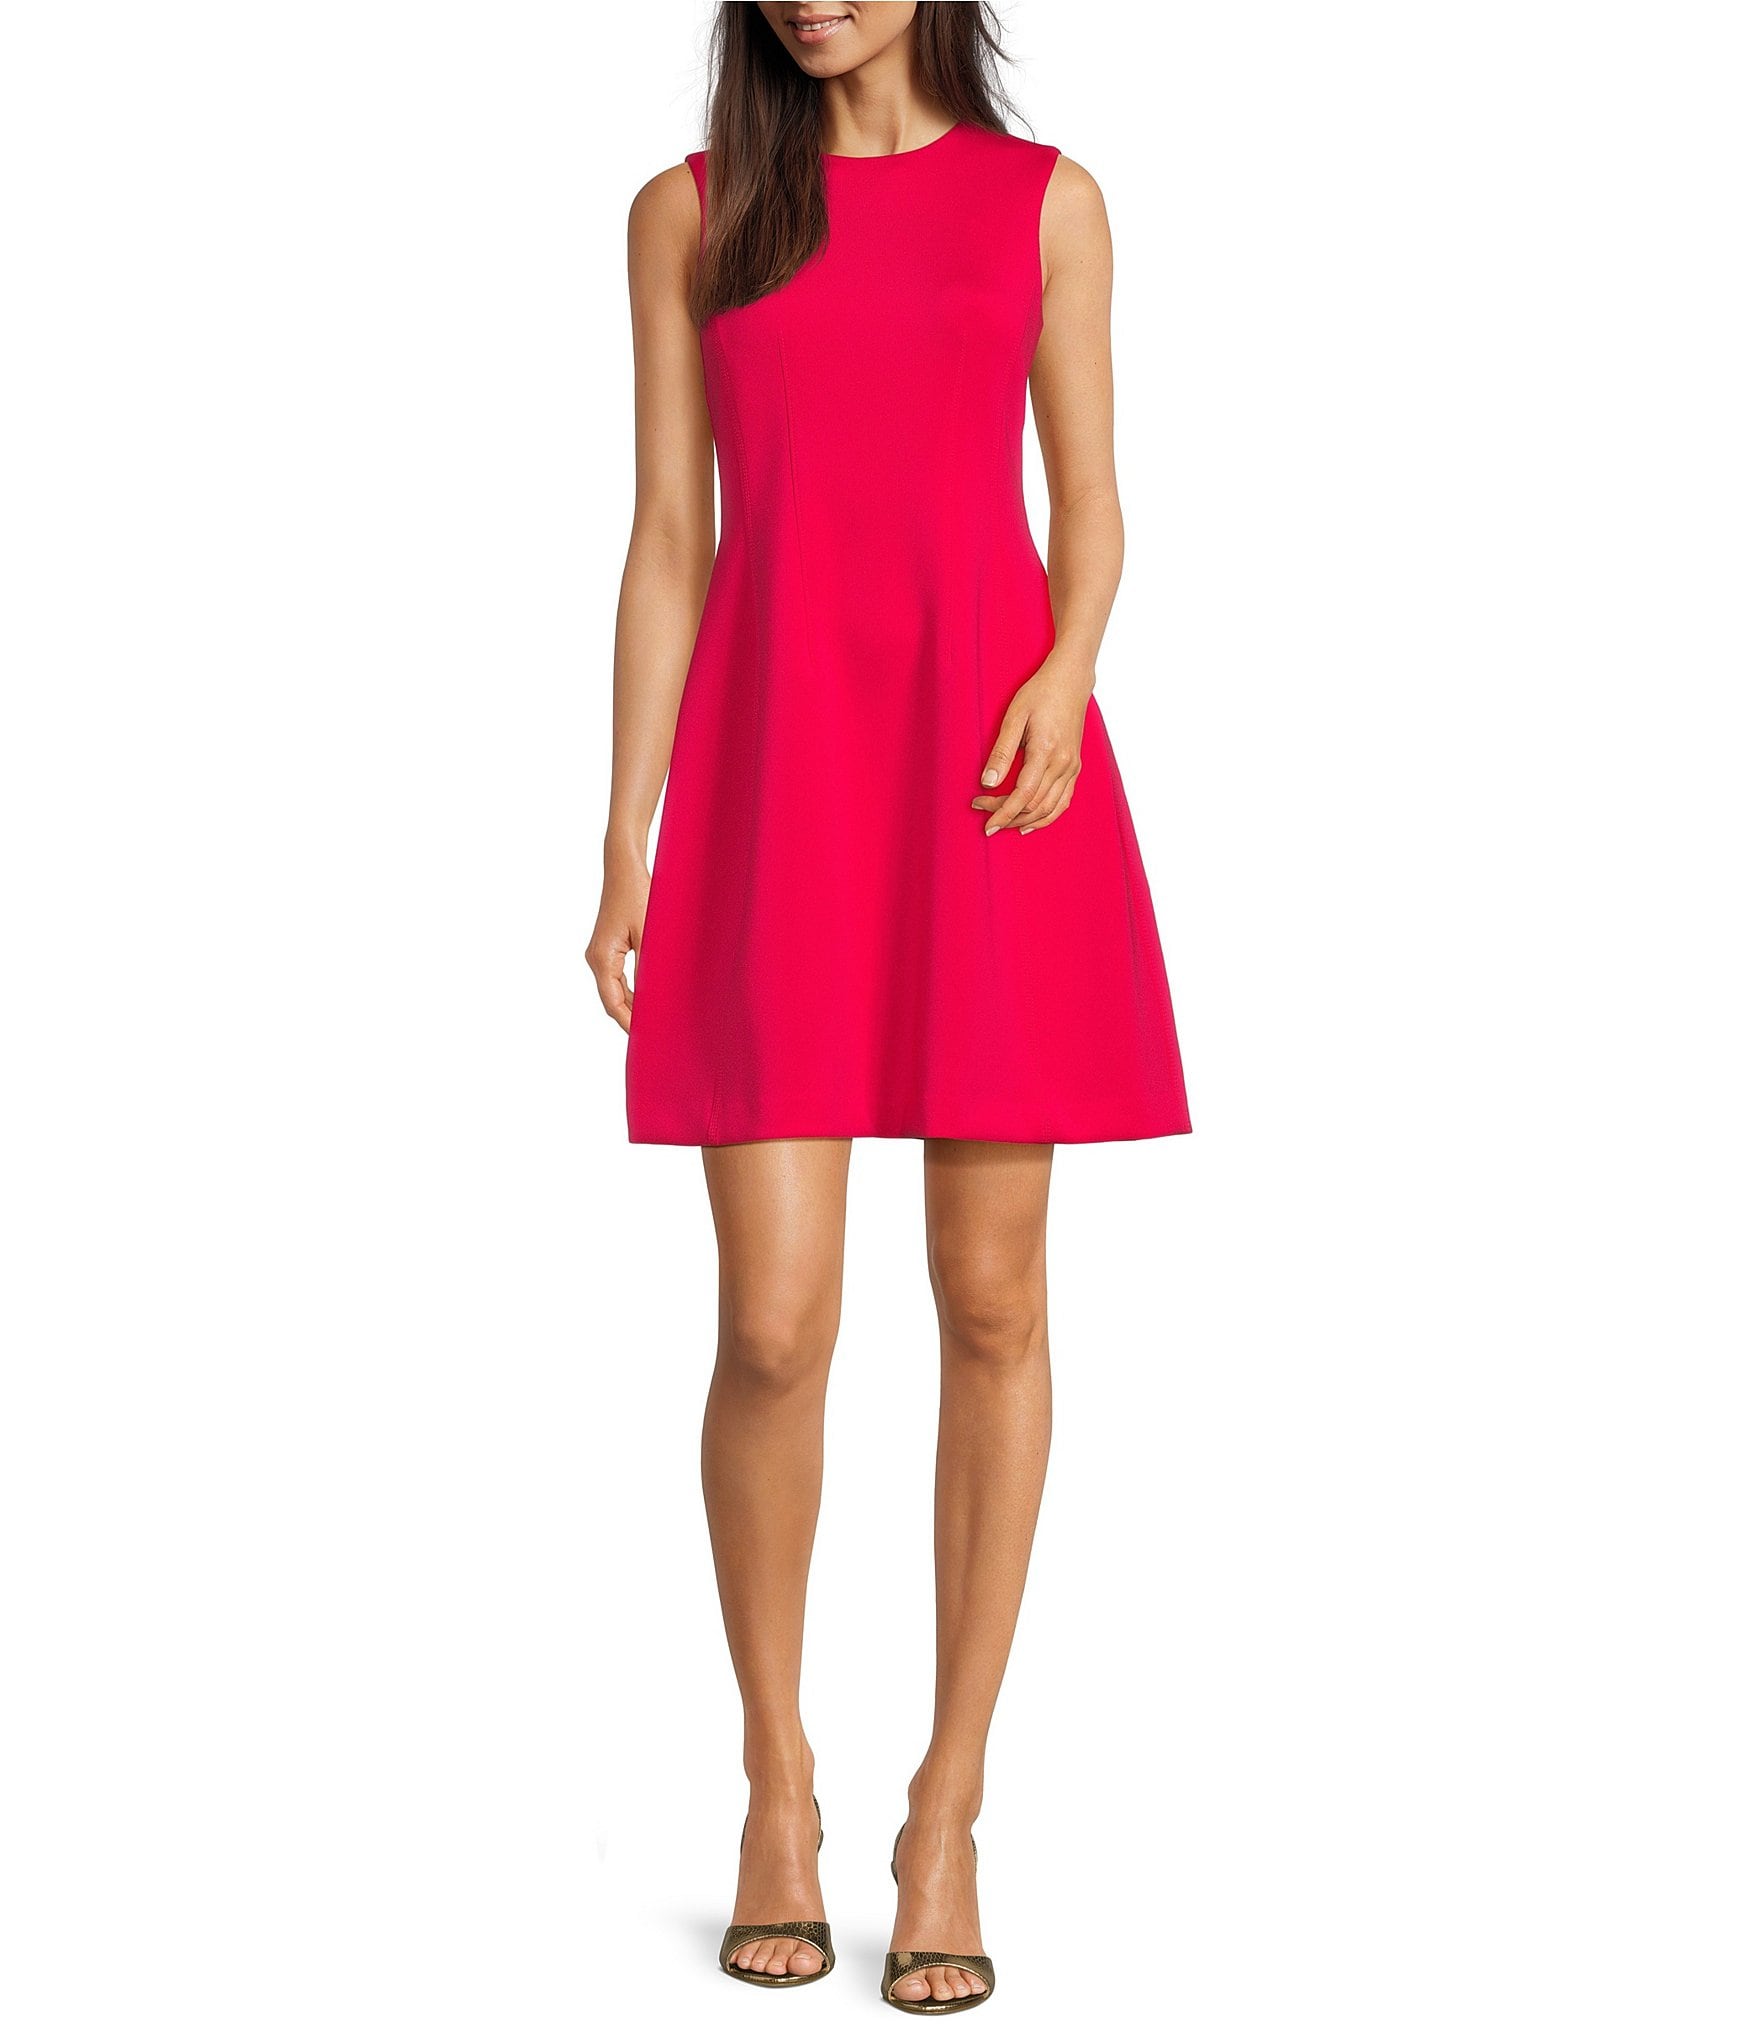 calvin klein dress pink: Women's Dresses